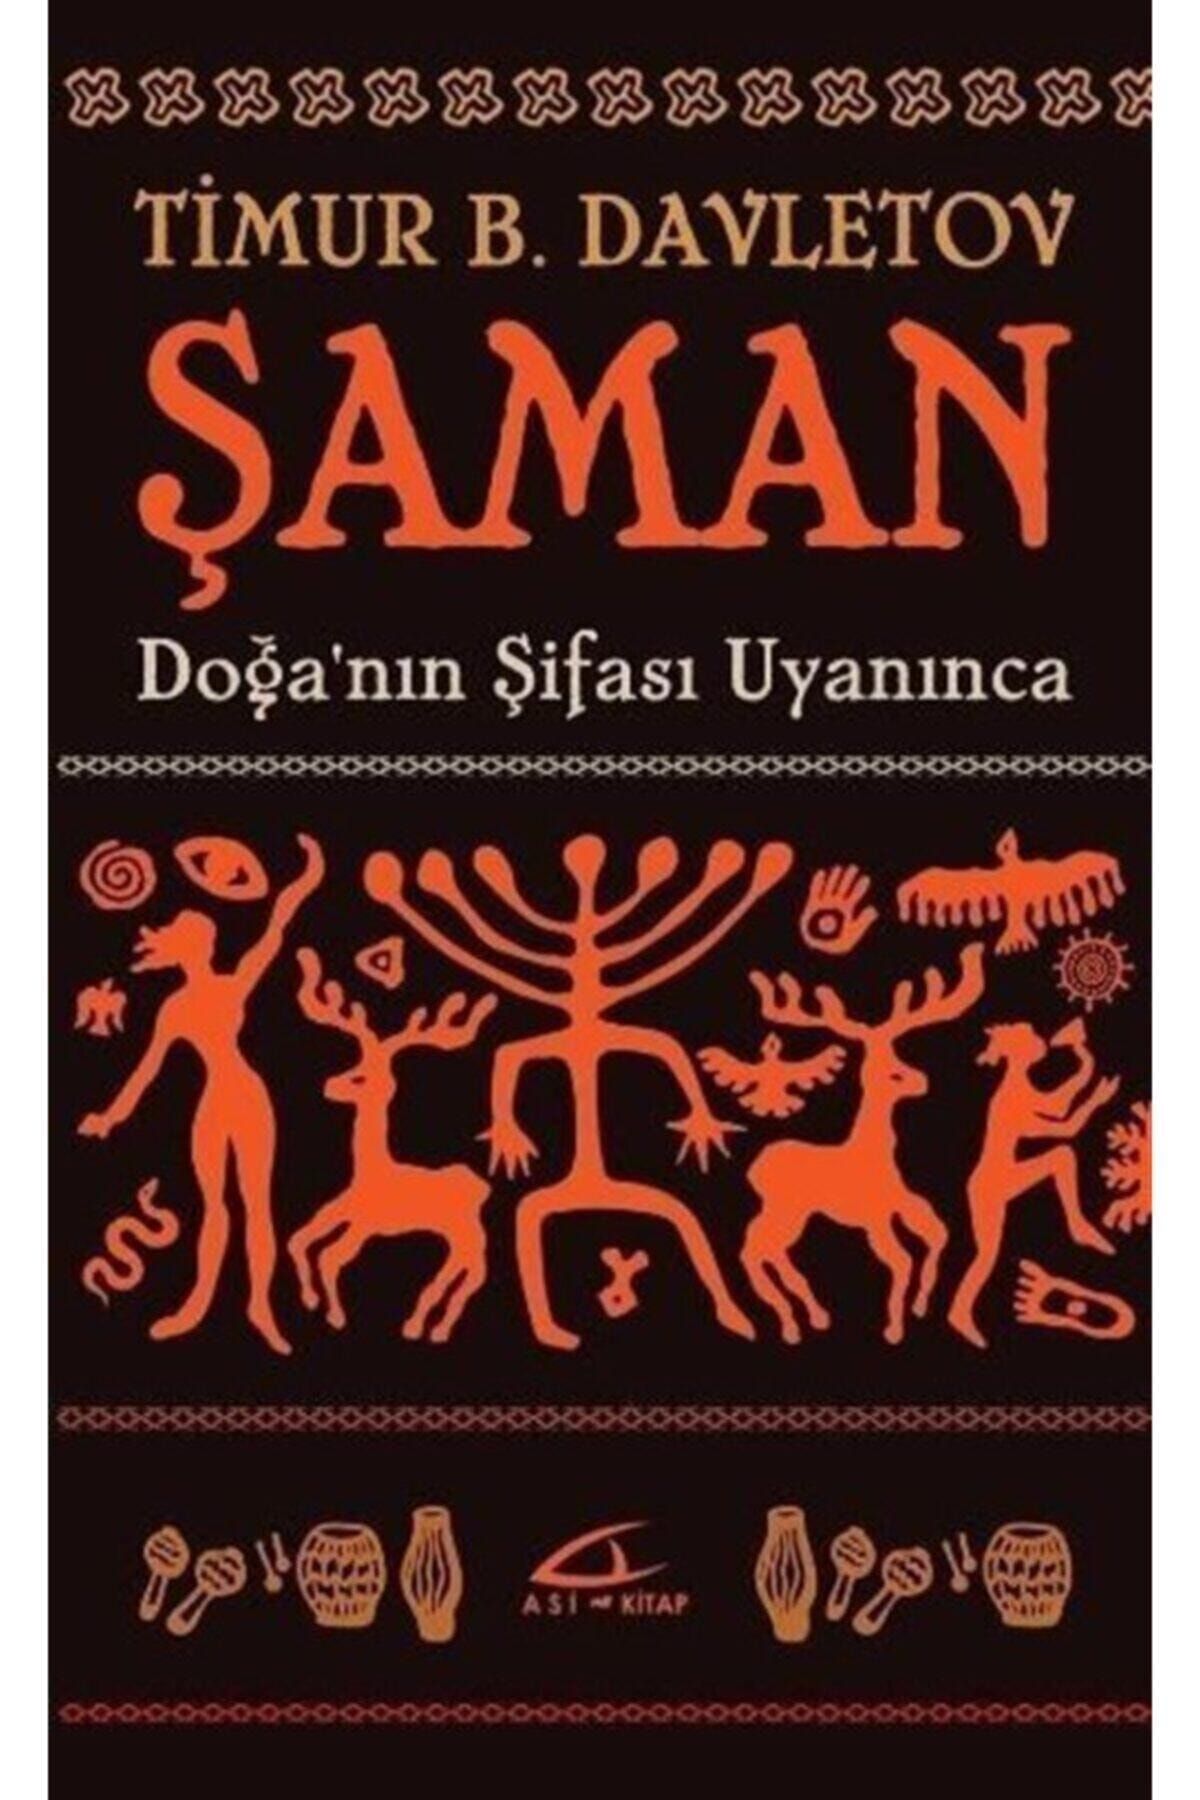 Asi Kitap Şaman & Doğa'nın Şifası Uyanınca